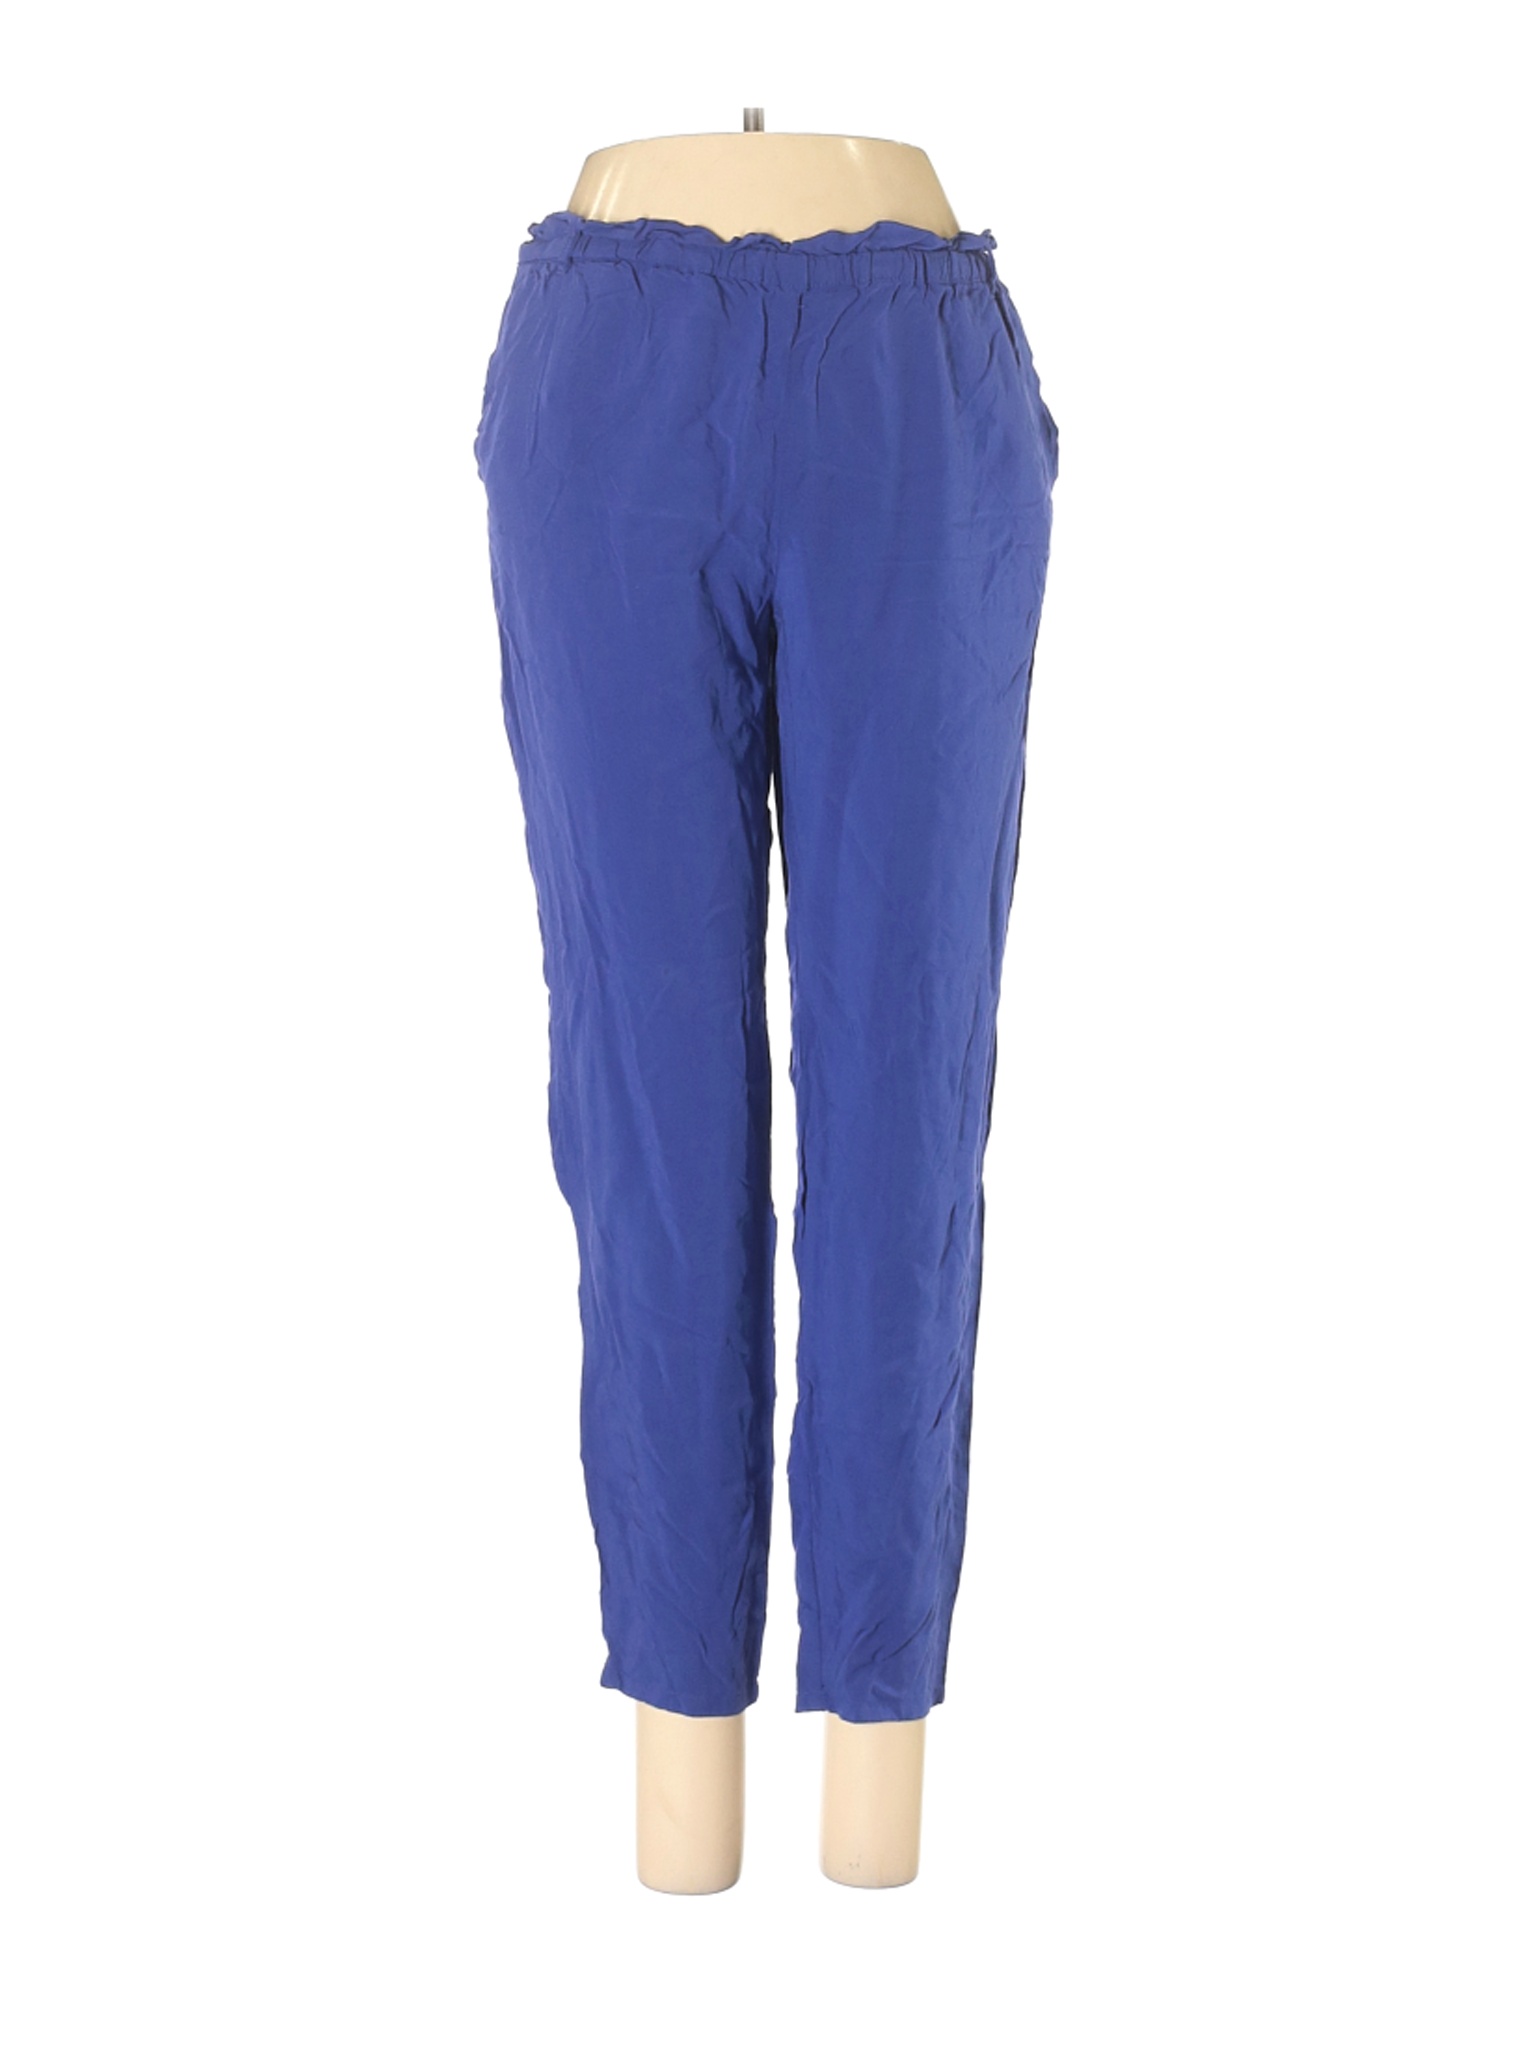 MNG Women Blue Casual Pants S | eBay